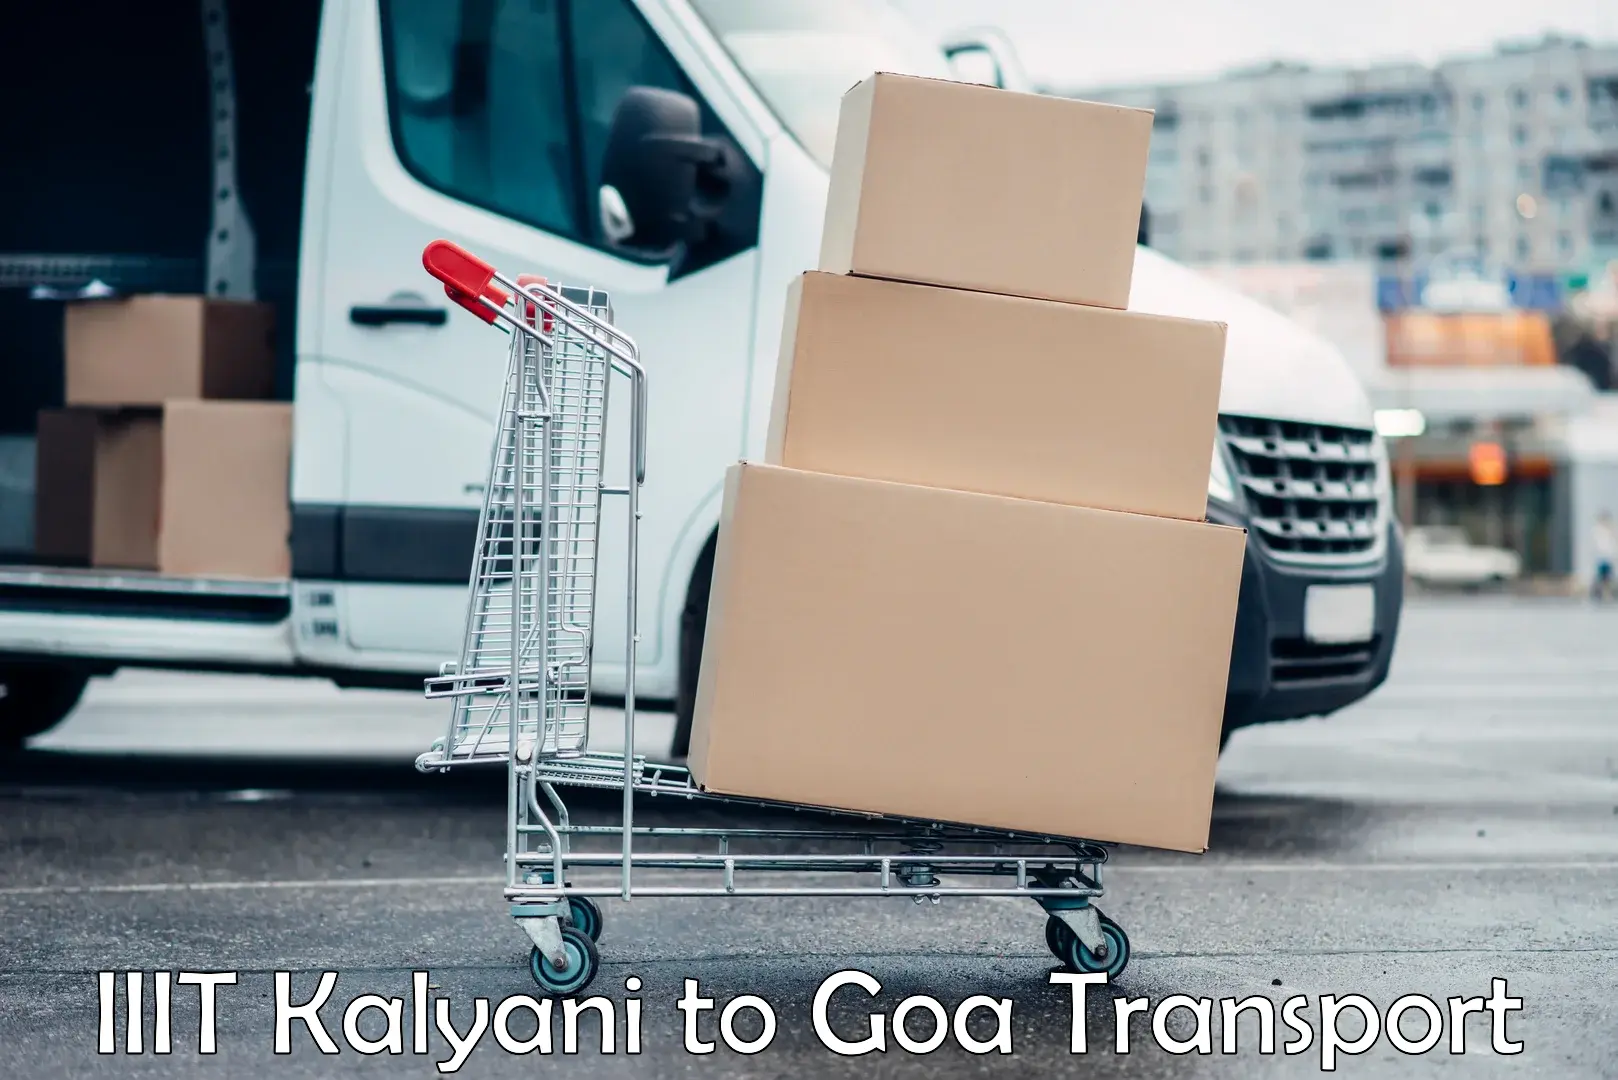 Transportation services in IIIT Kalyani to IIT Goa